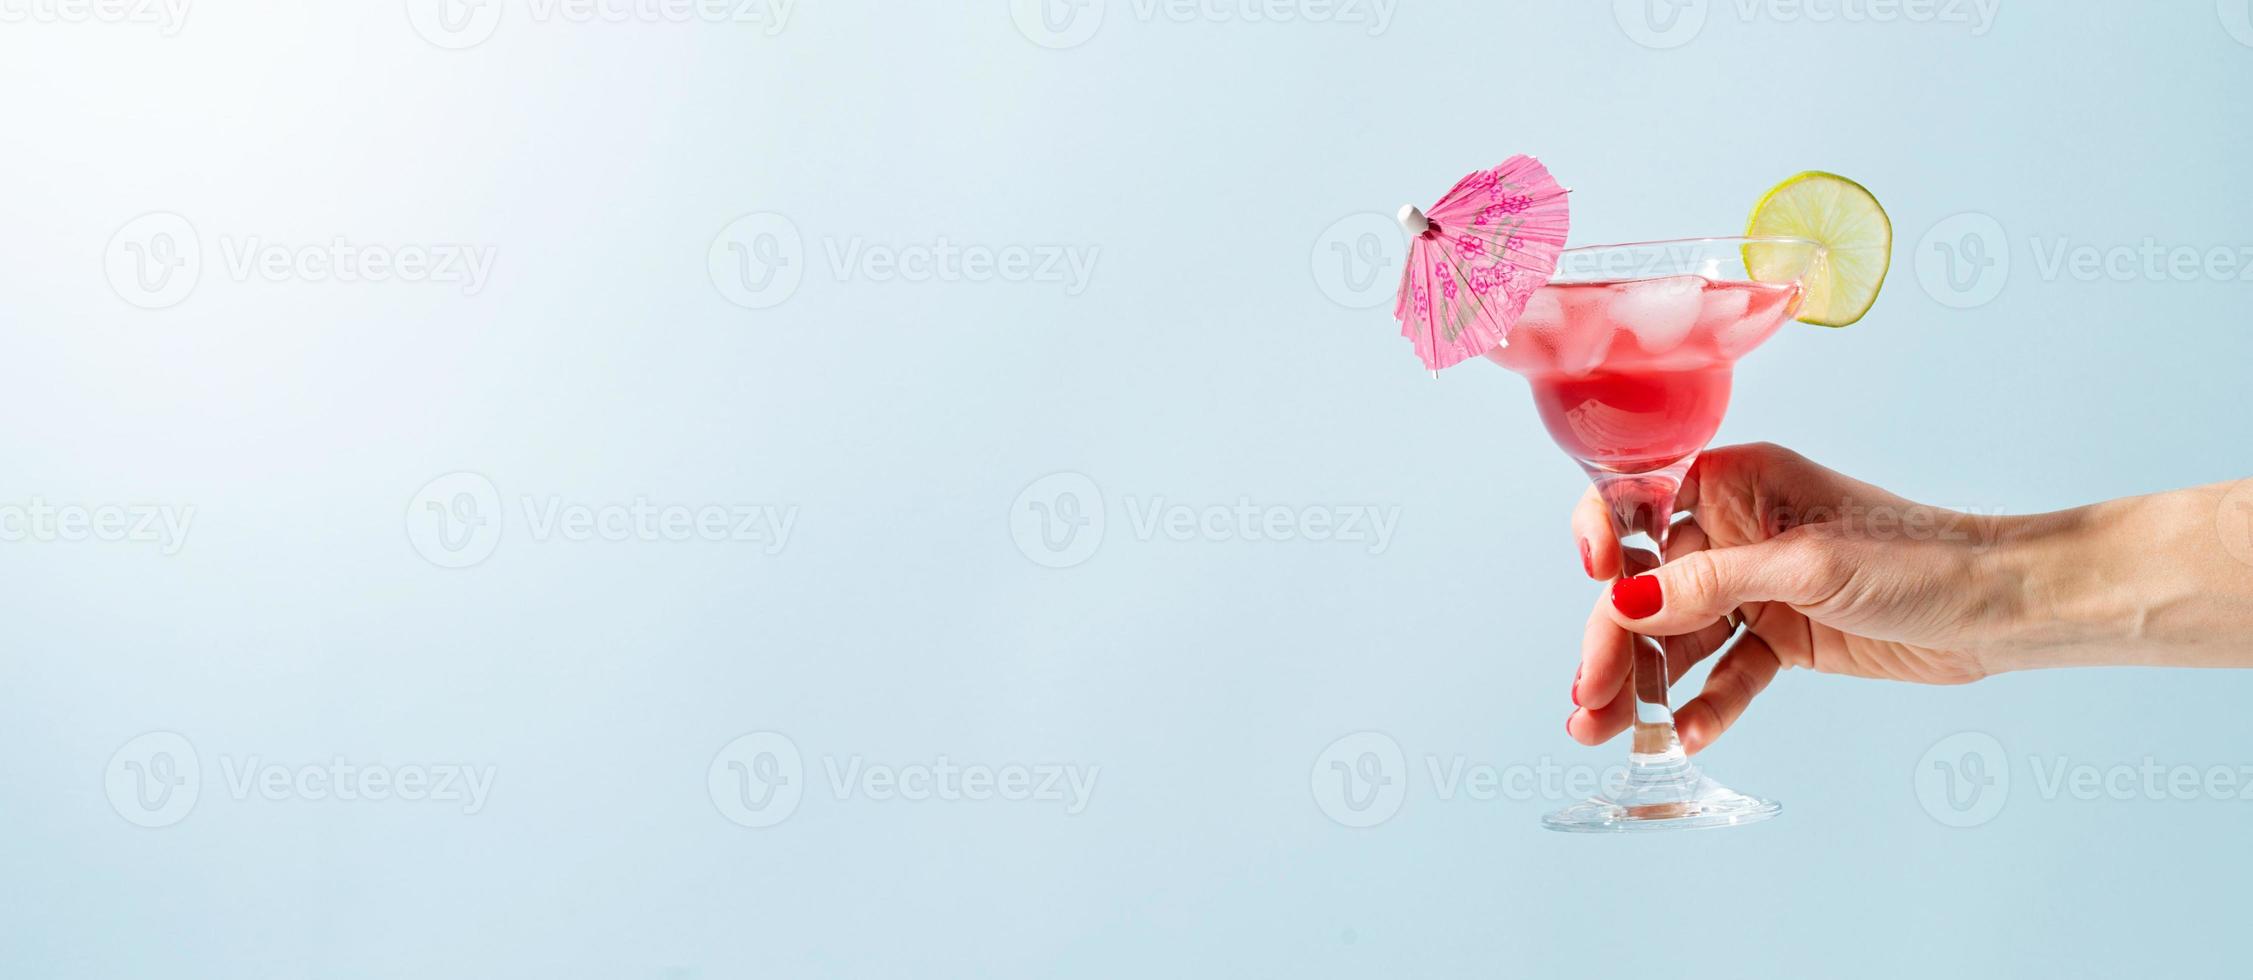 mano femenina con bonita manicura roja sosteniendo un cóctel fresco de verano con cubitos de fresa, lima y hielo sobre fondo azul con espacio para copiar foto